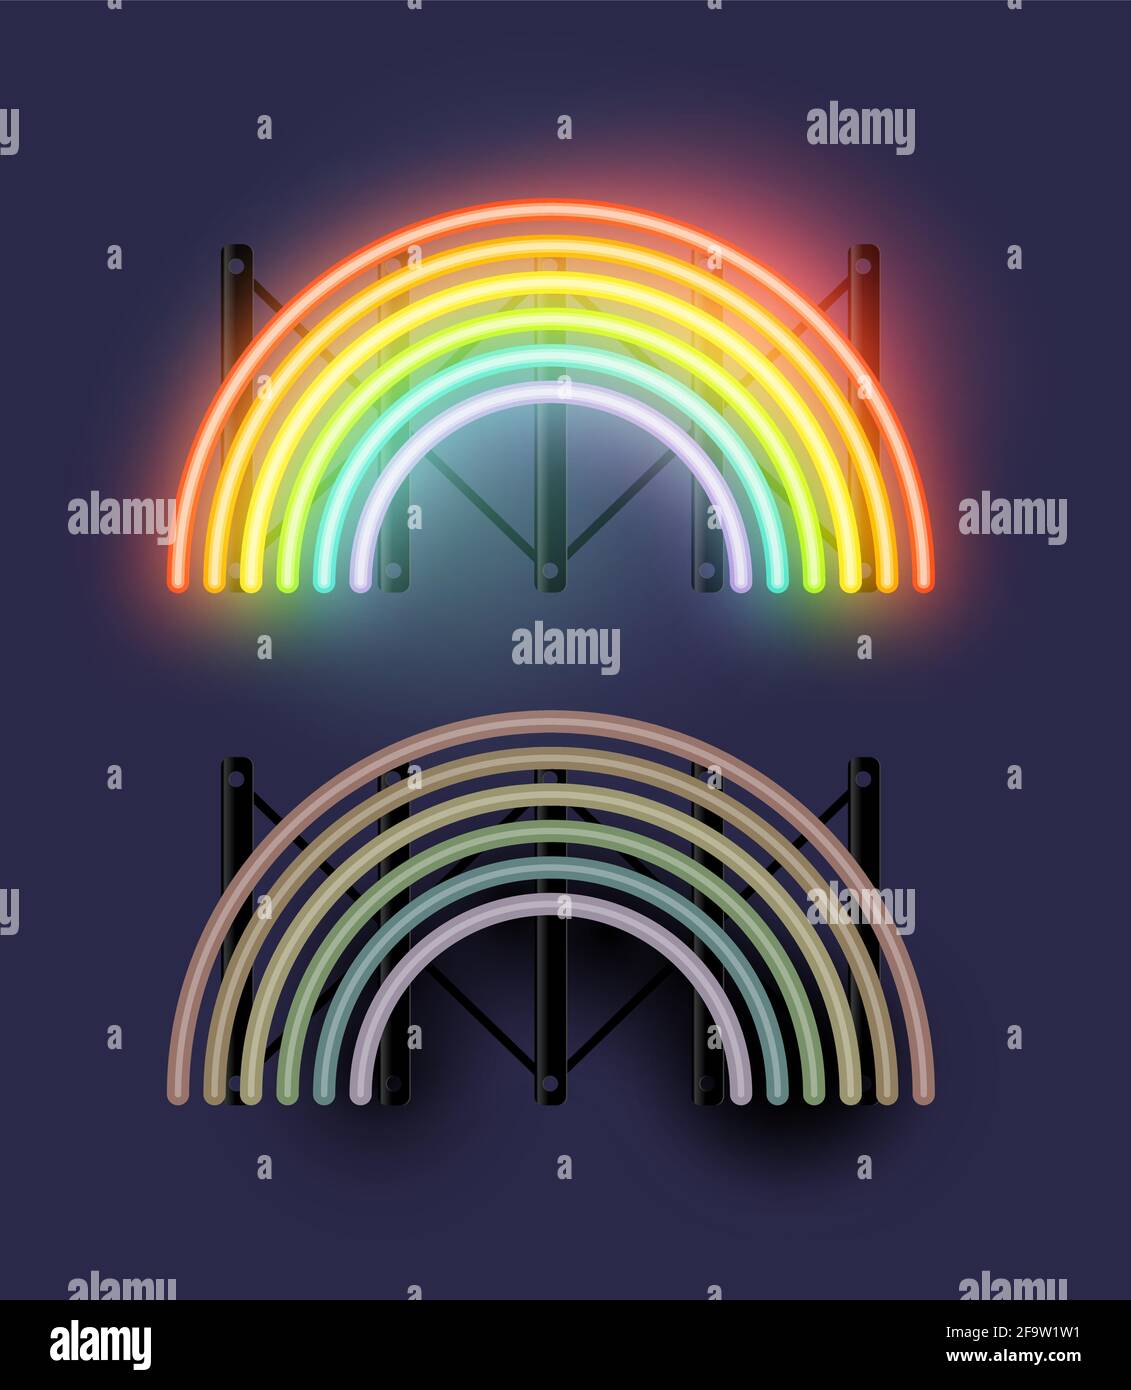 Colorata luce arcobaleno al neon con stati ON e OFF. Concetto di supporto, amore e tolleranza. Illustrazione vettoriale Illustrazione Vettoriale